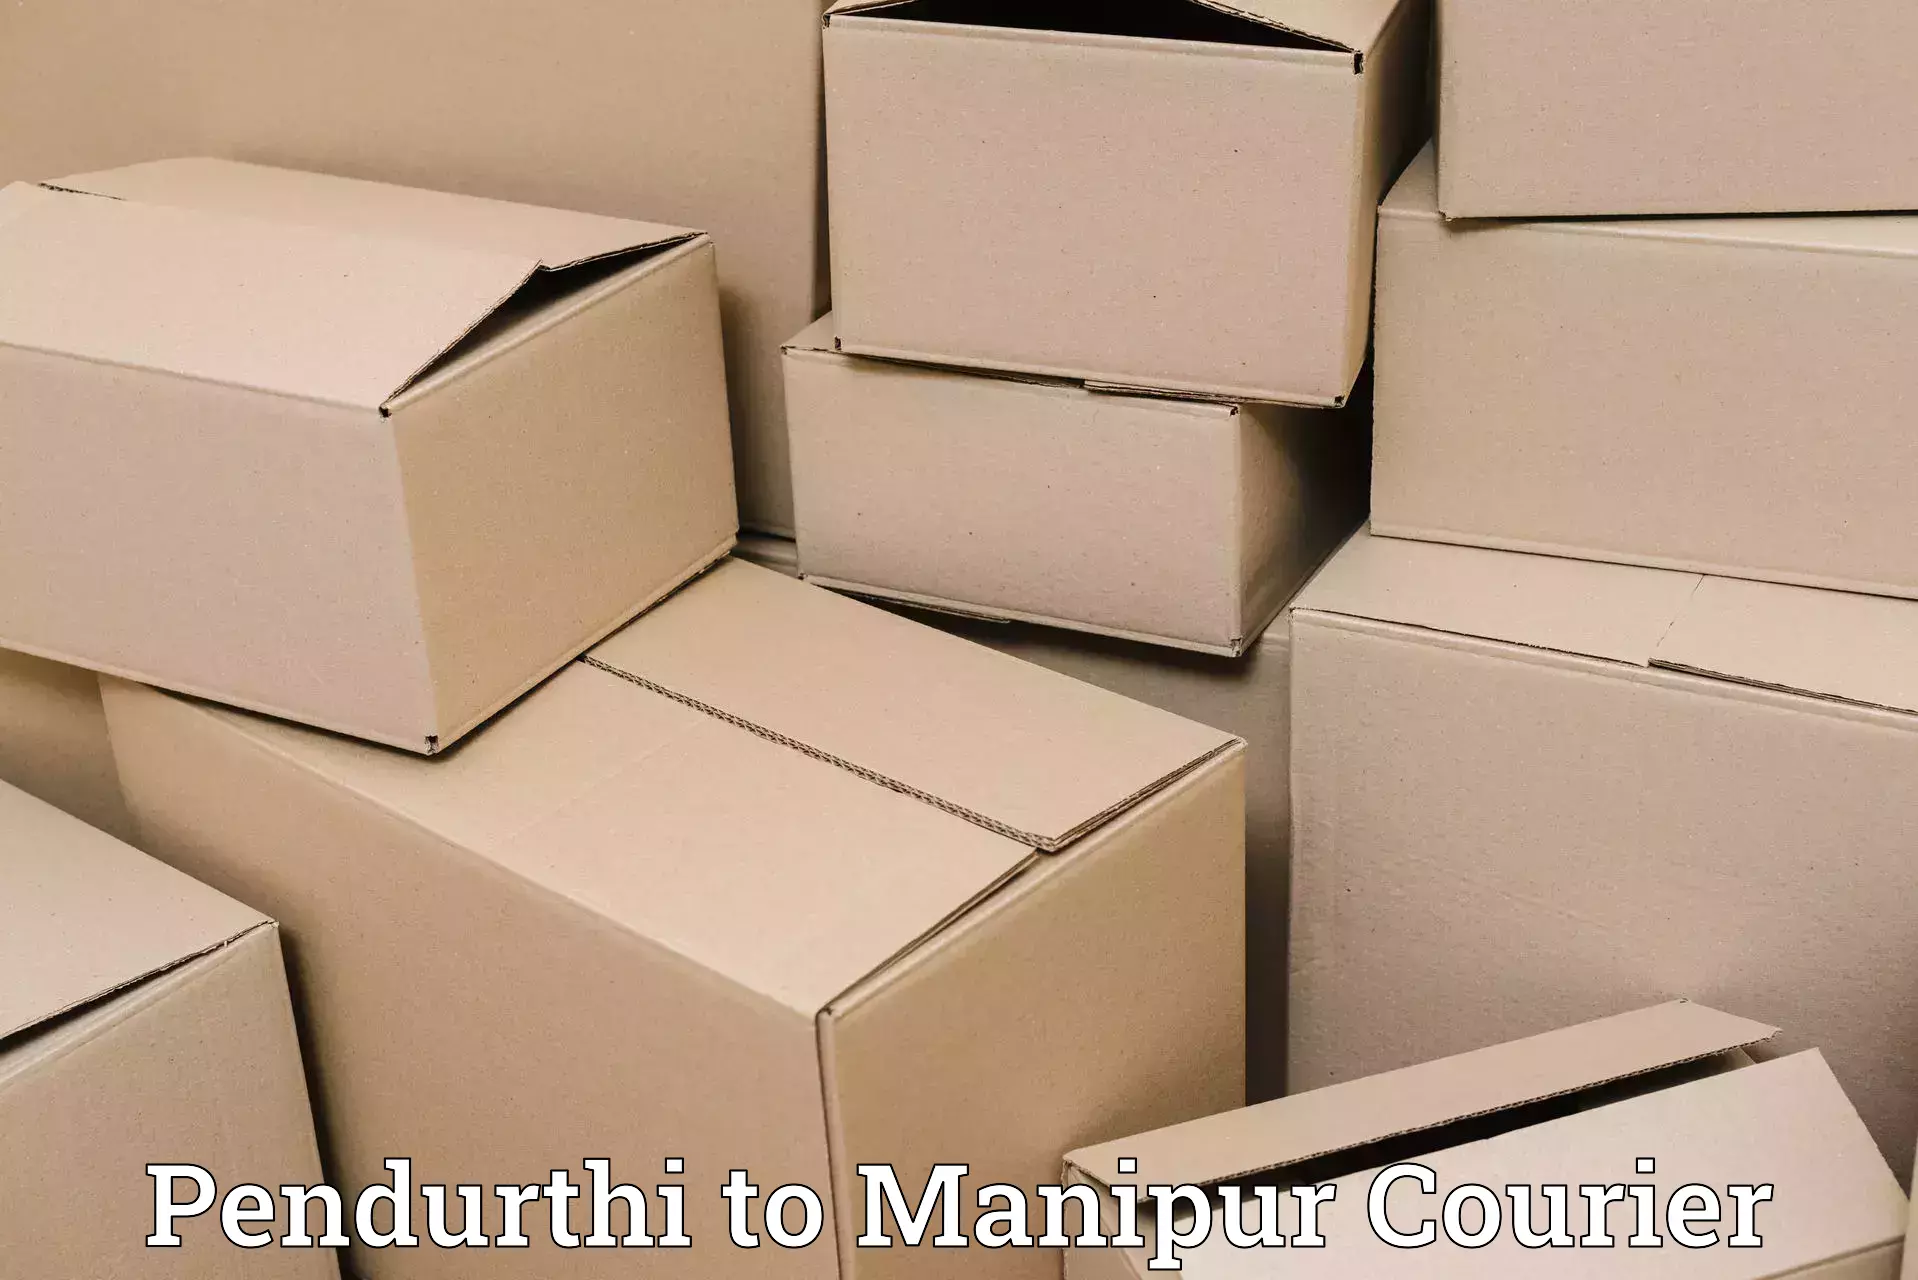 Seamless shipping service Pendurthi to Manipur